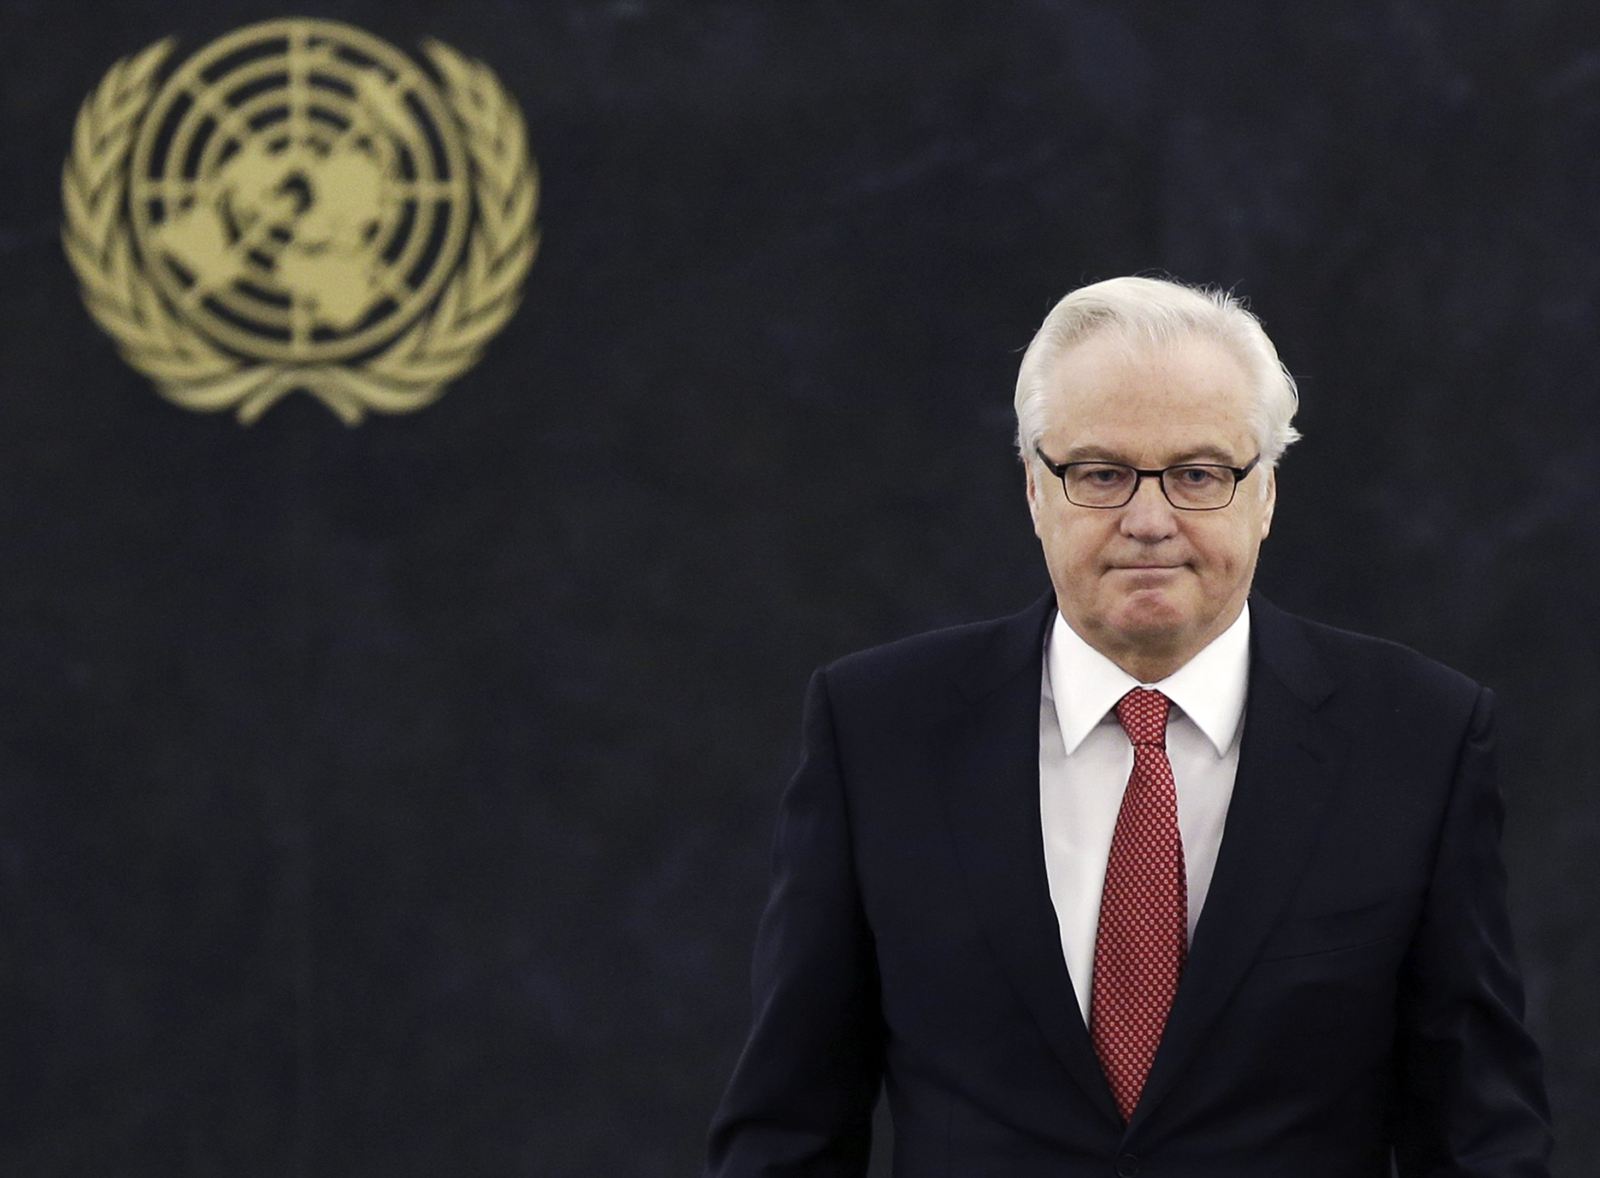 俄罗斯驻联合国大使丘尔金突然逝世